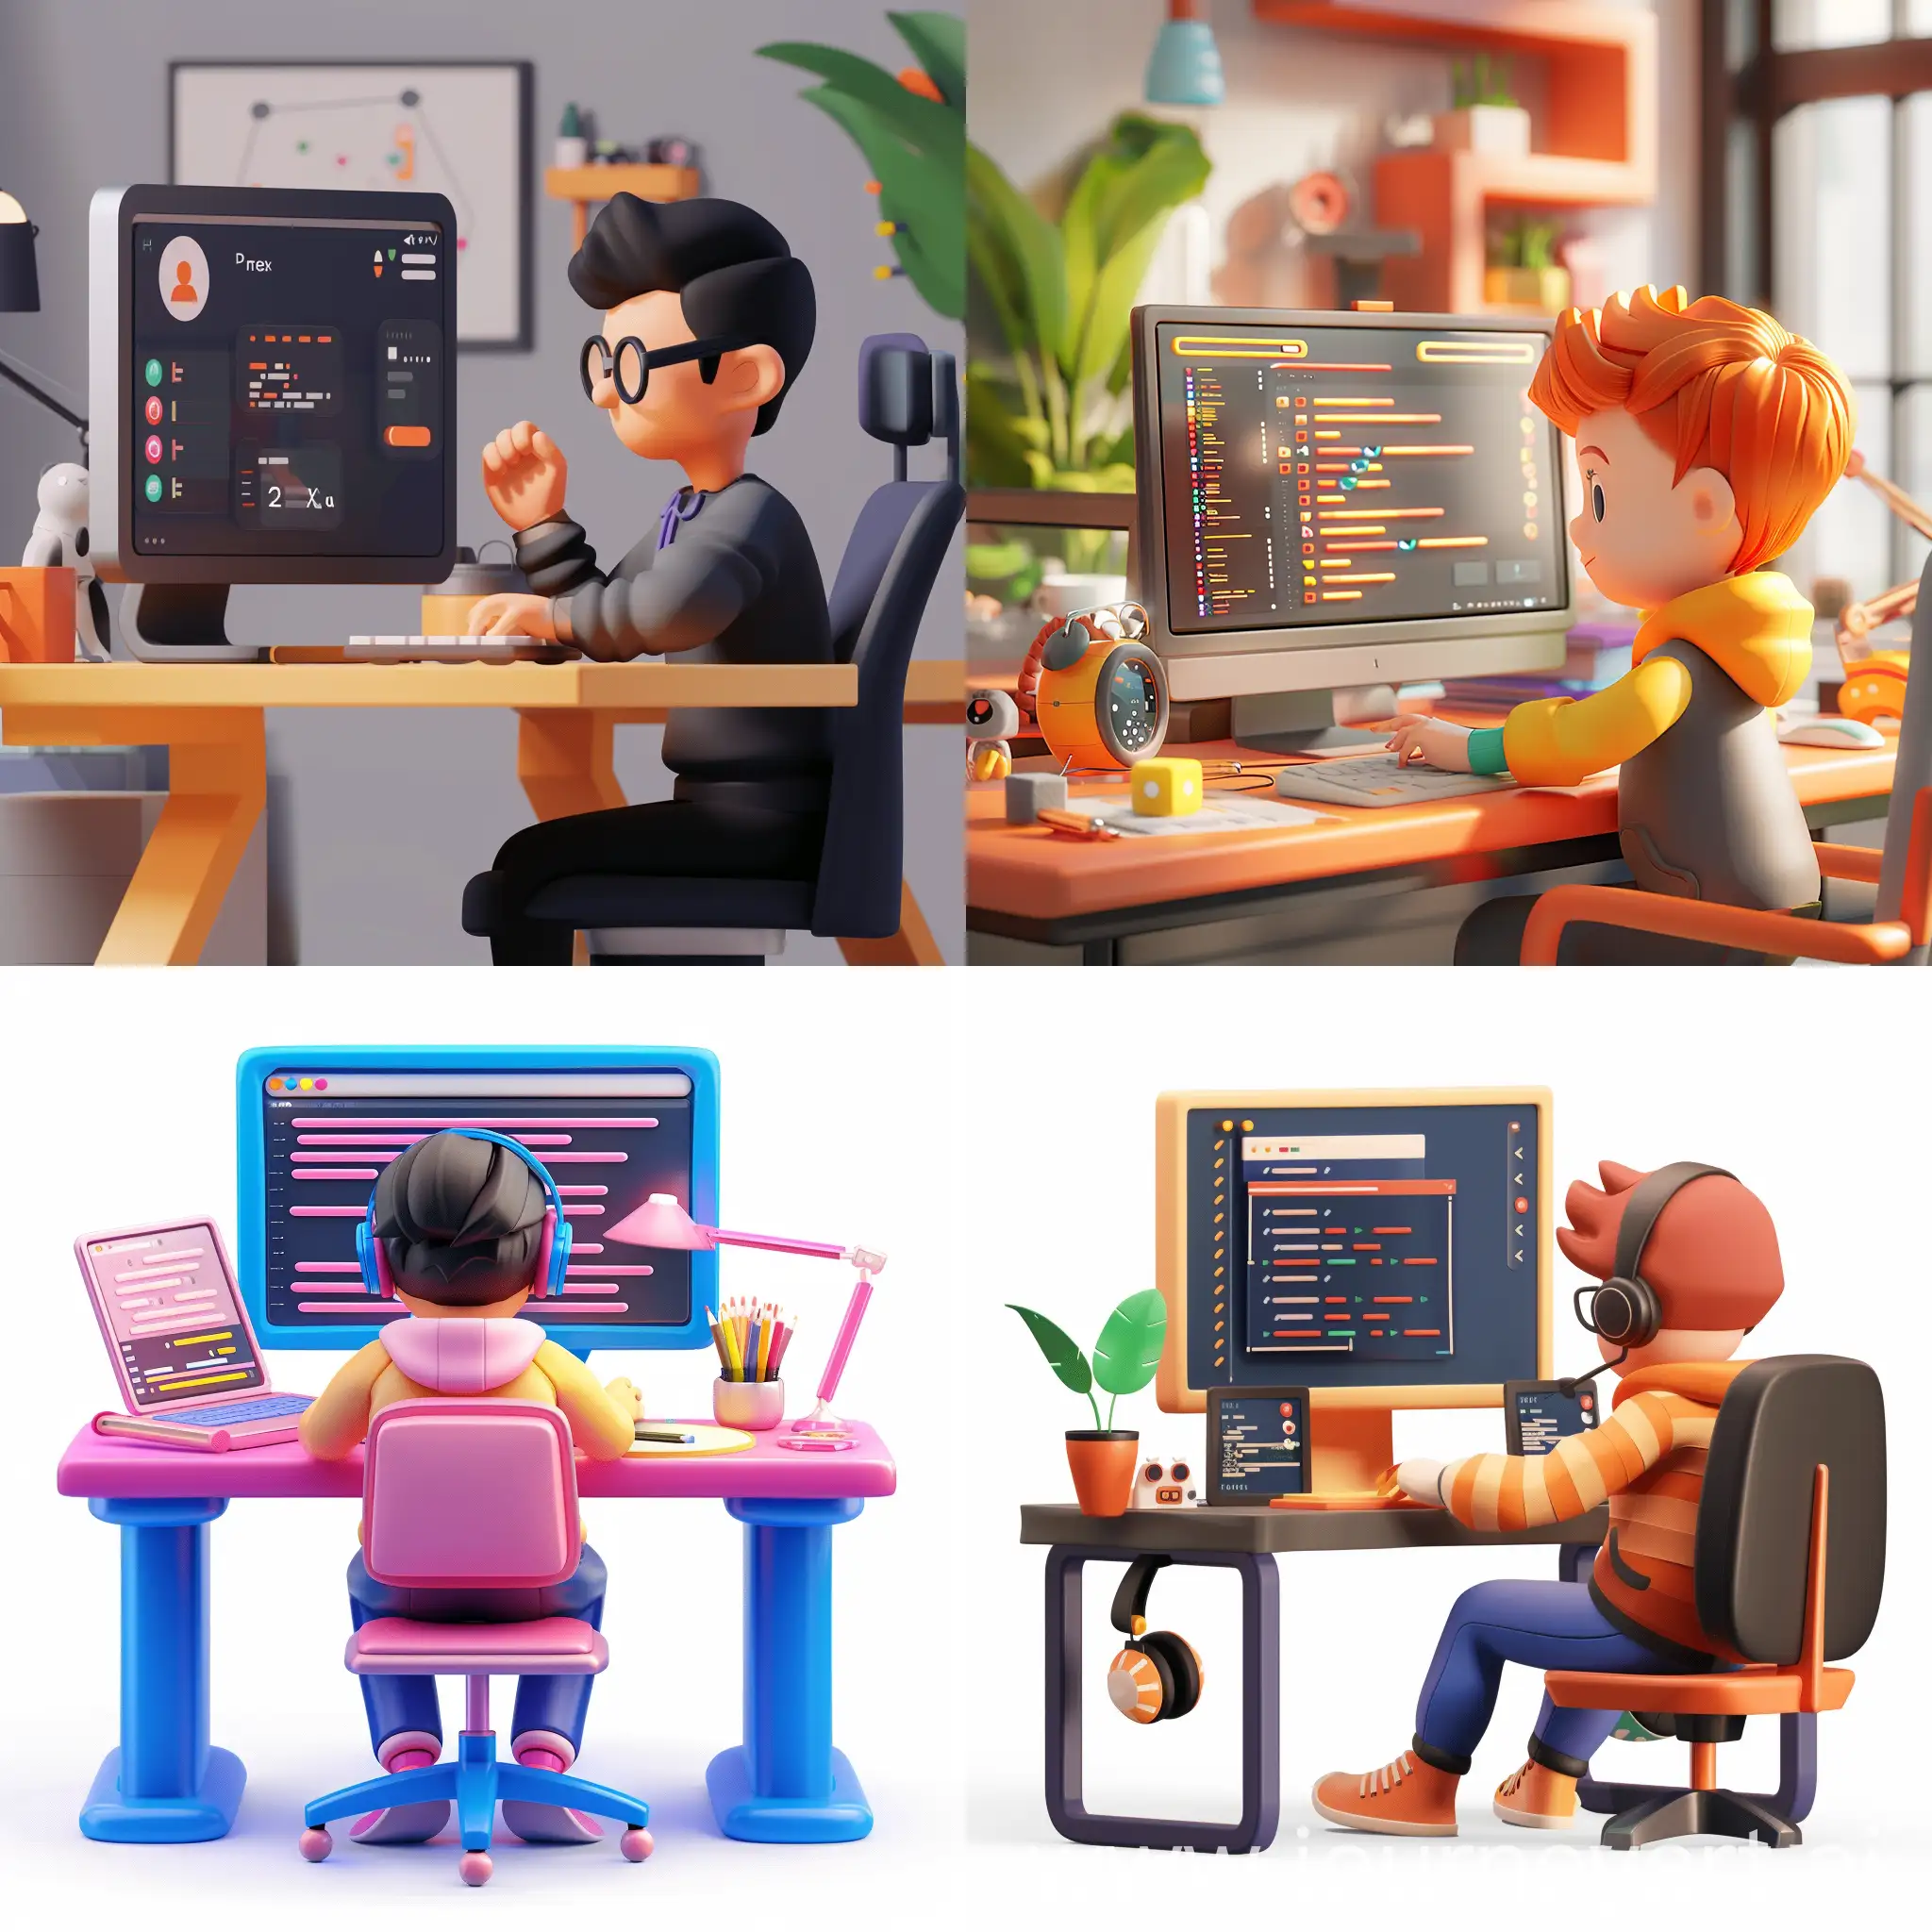 diseñador ui/ux en su escritorio programando, estilo playtoon 3d